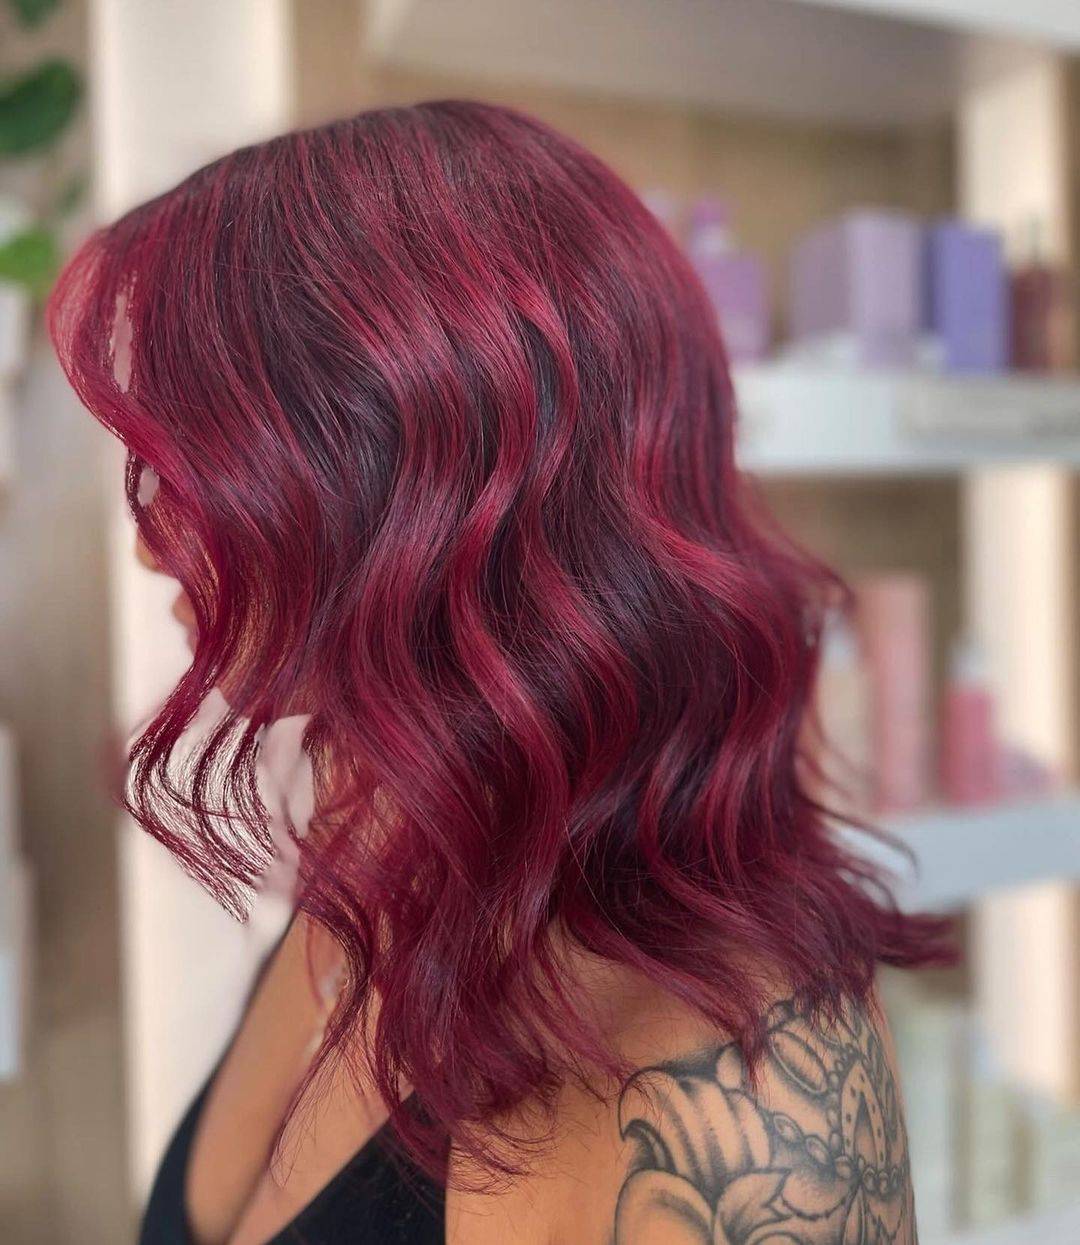 Burgundy hair color 251 burgundy hair color | burgundy hair color for women | burgundy hair color highlights Burgundy Hair Color